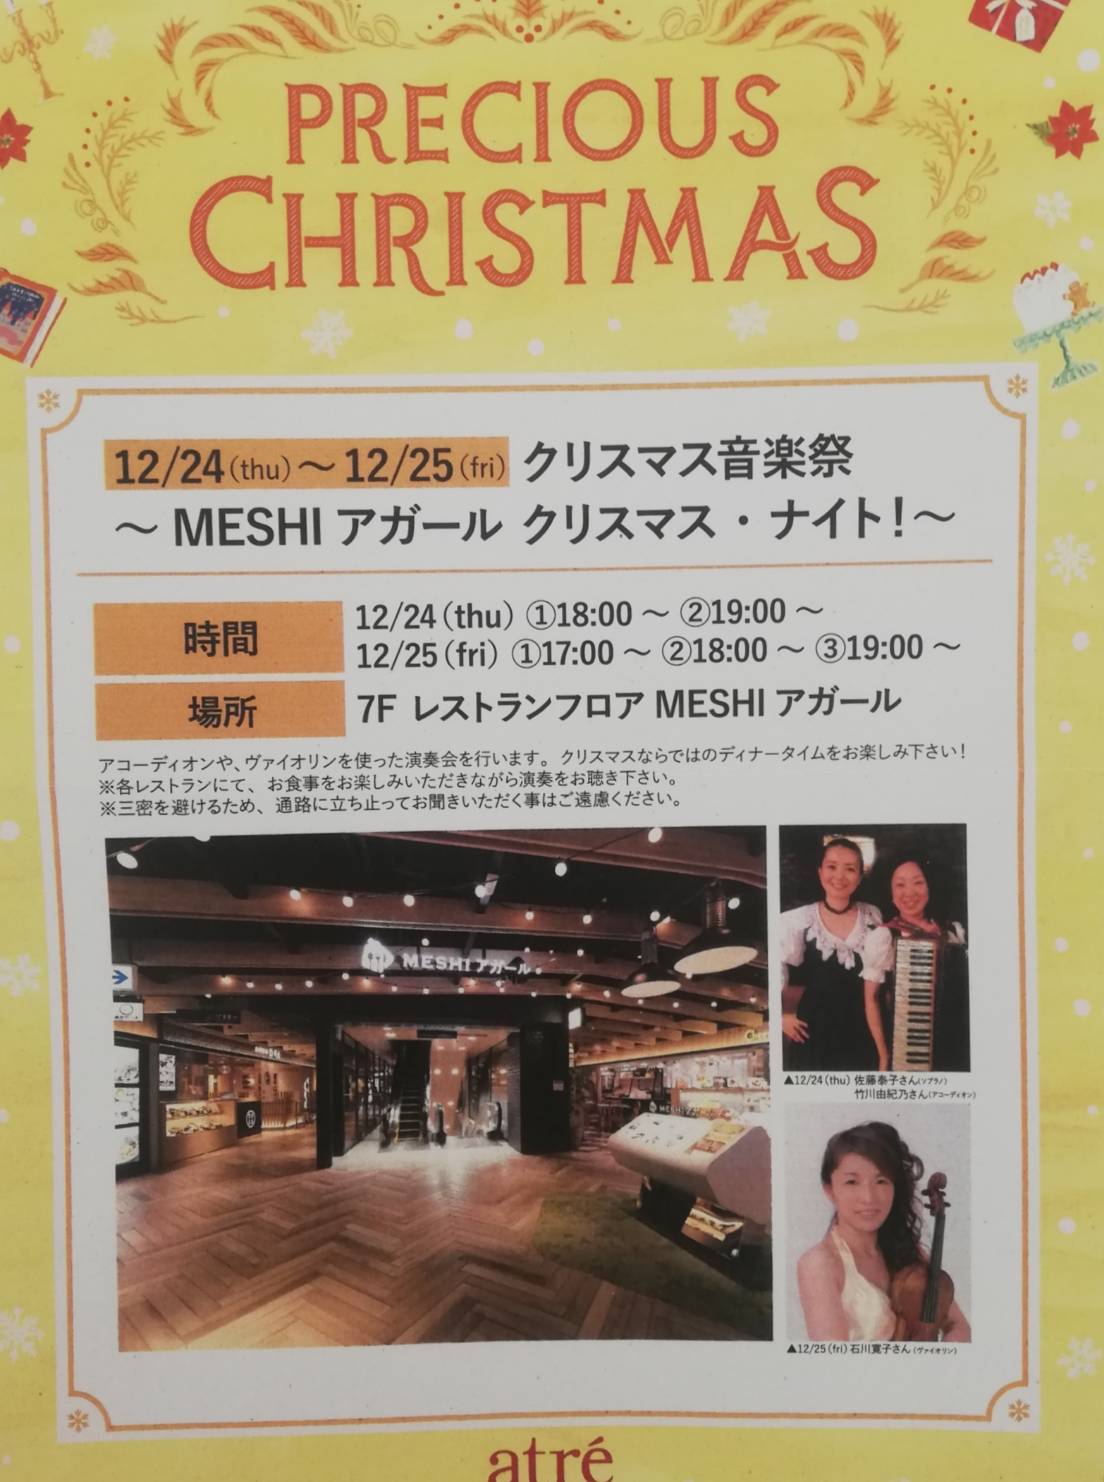 アトレ松戸7階レストランフロアMESHIアガールクリスマス音楽祭